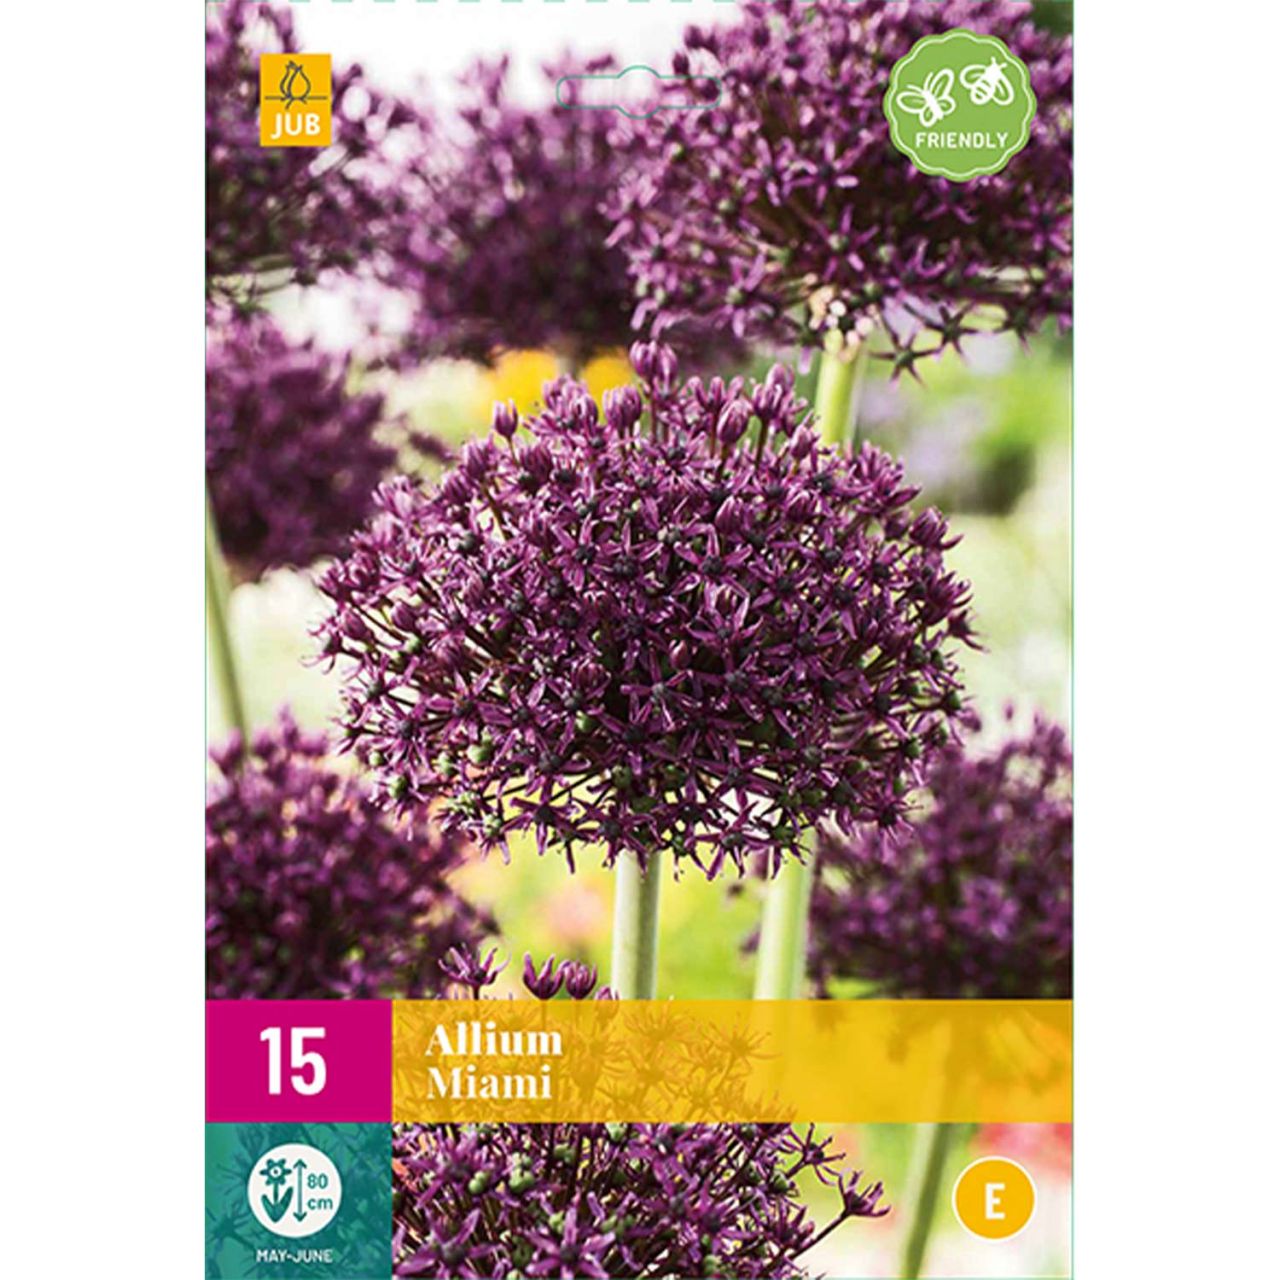 Kategorie <b>Herbst-Blumenzwiebeln </b> - Allium 'Miami®' - 15 Stück - Allium